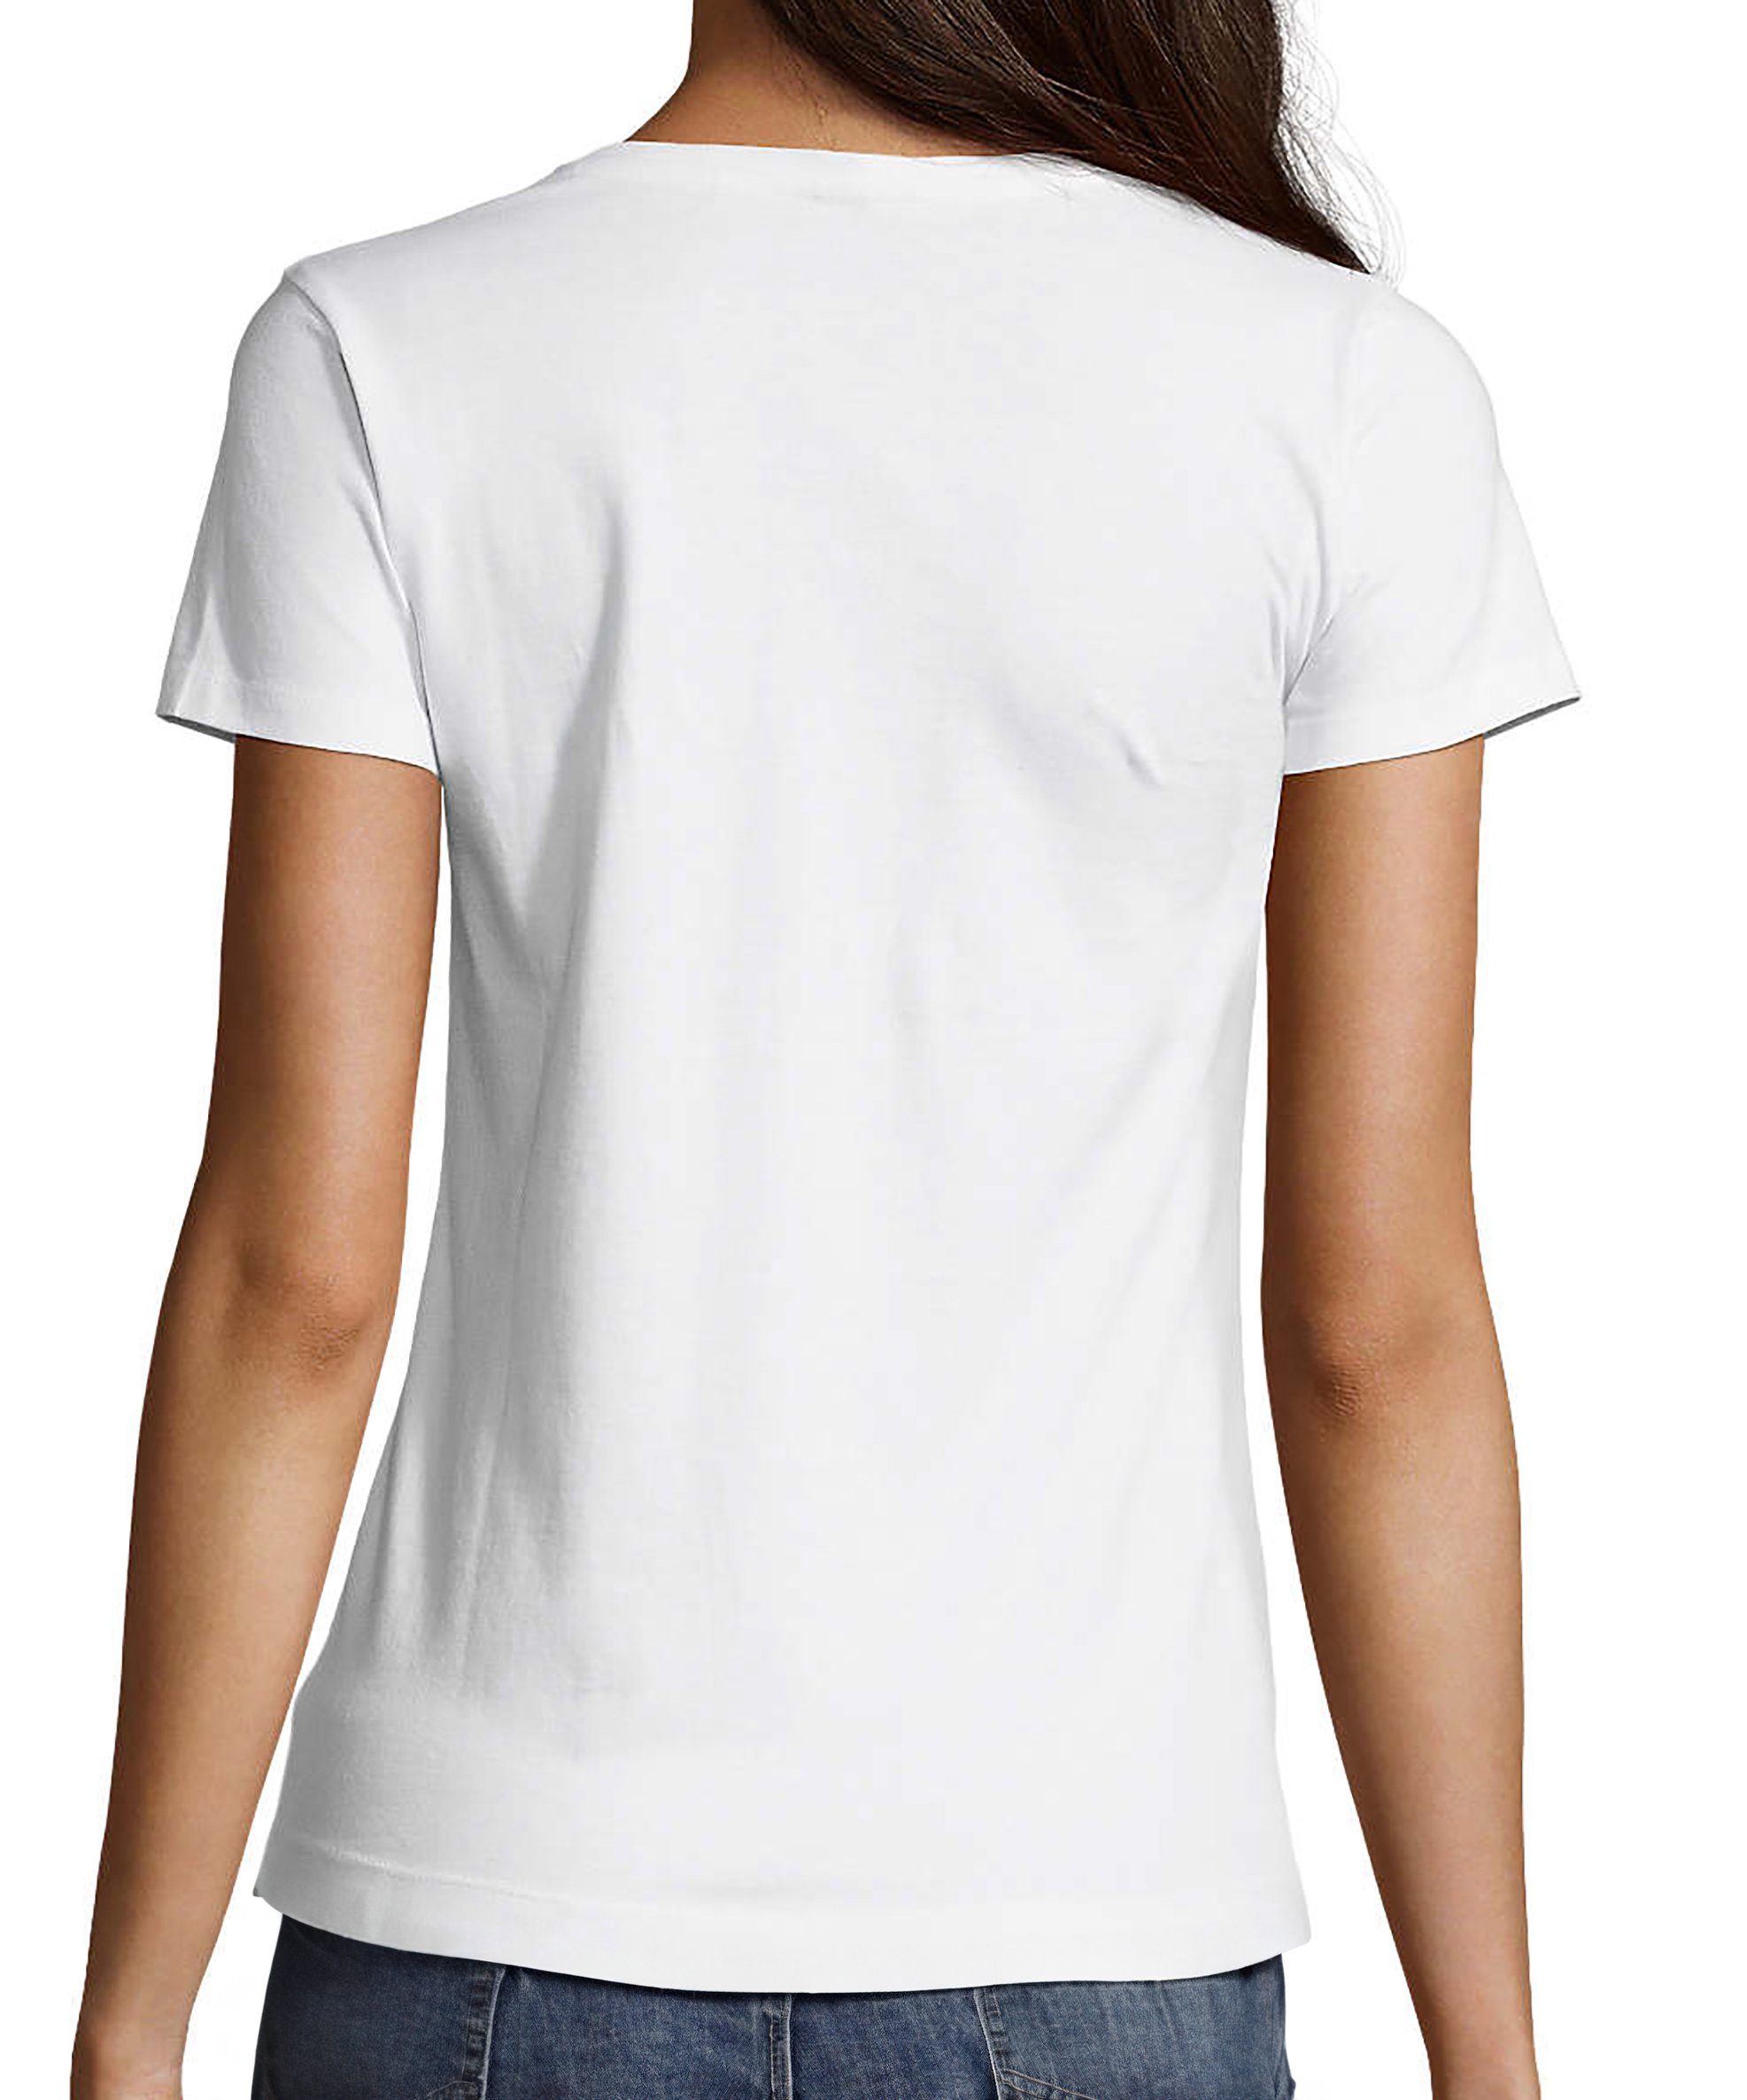 T-Shirt Damen mit weiss i313 MyDesign24 Lebkuchen V-Ausschnitt O´Zapft Herz Oktoberfest - is Shirt Fit, Print Slim T-Shirt